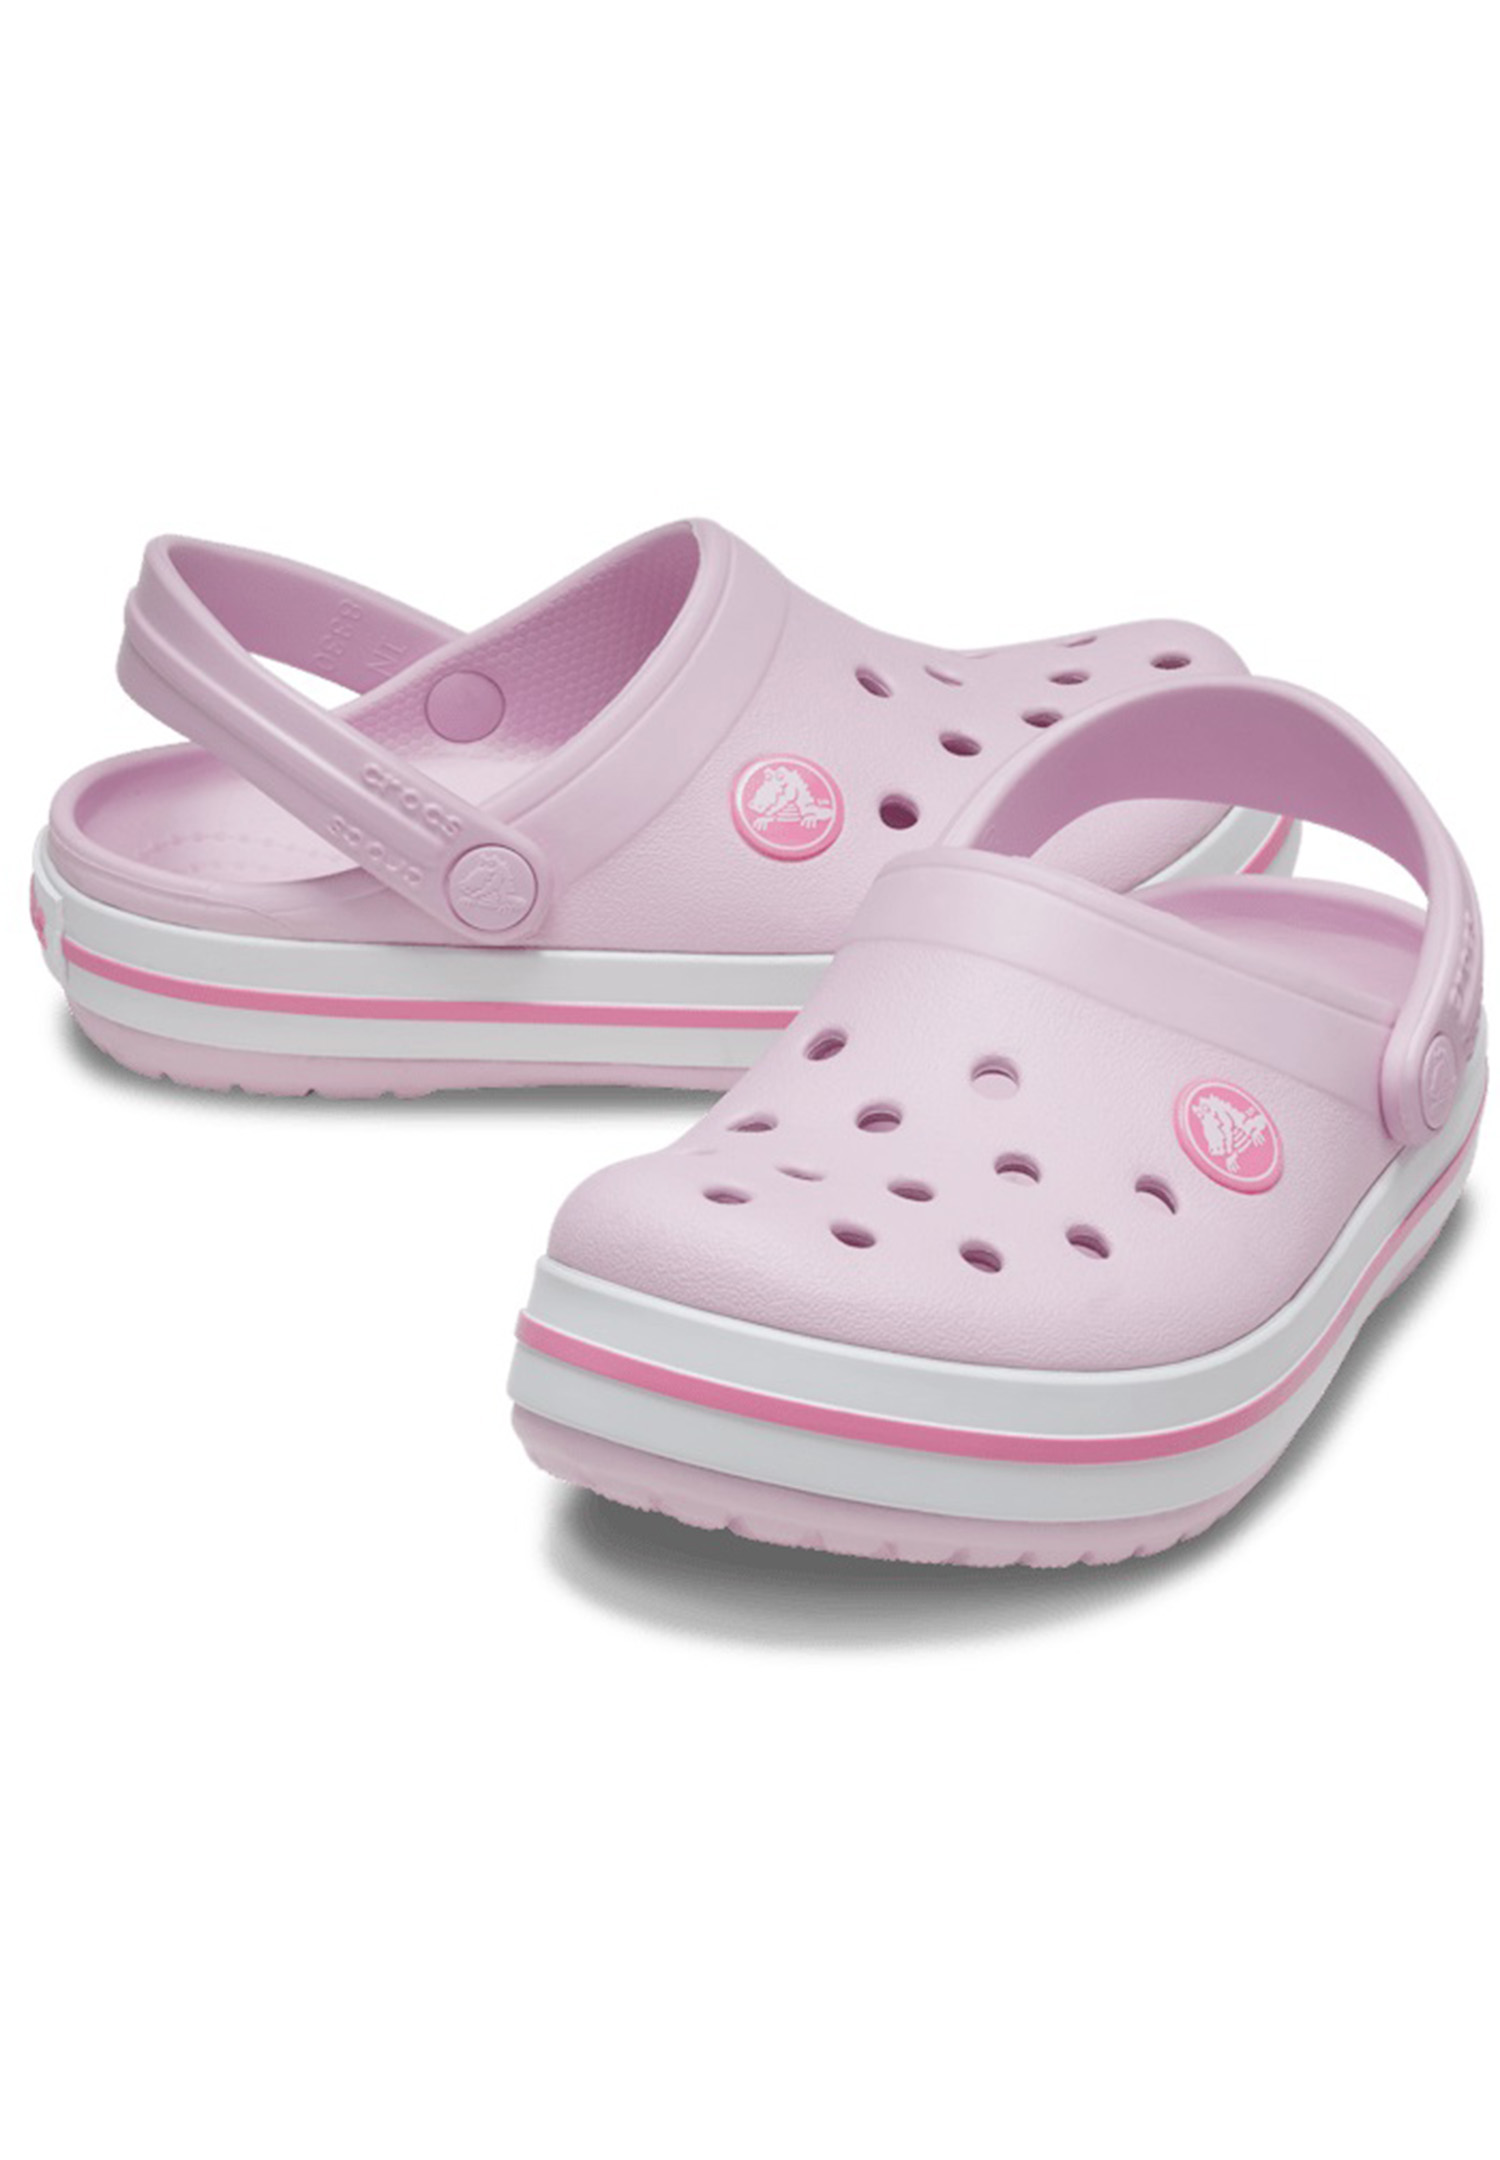 Crocs Kids Crocband Clog T Unisex Kinder Schuhe Sandalen 207005 Rosa 